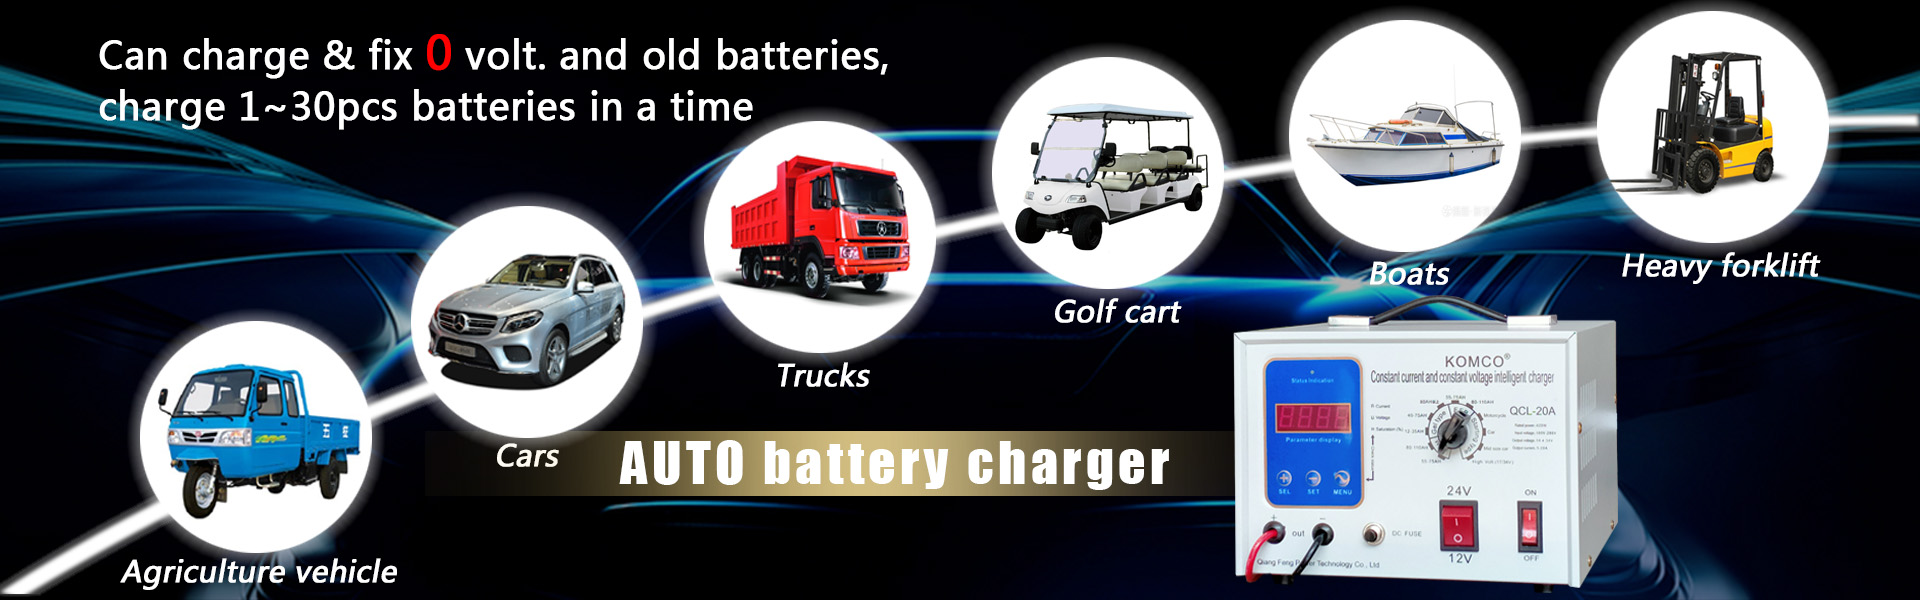 Chargeur de batterie de voiture, chargeur de batterie automatique, chargeur de batterie 12V 24V,Qiangfeng Power Technology Co., Ltd